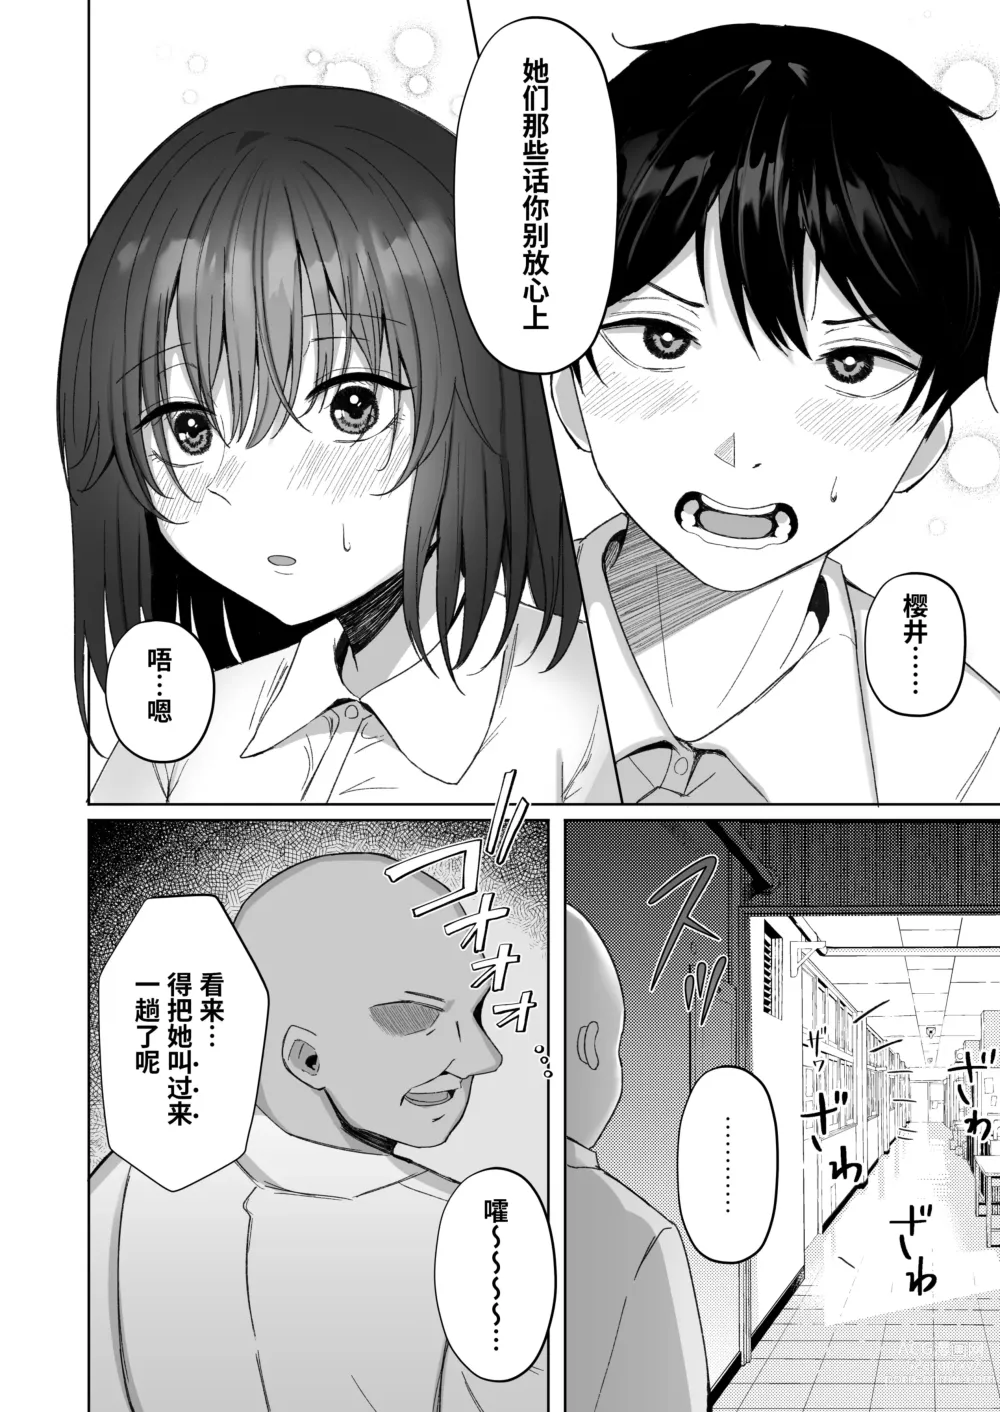 Page 7 of doujinshi Netorare ~Kurokami Musume no Junan~